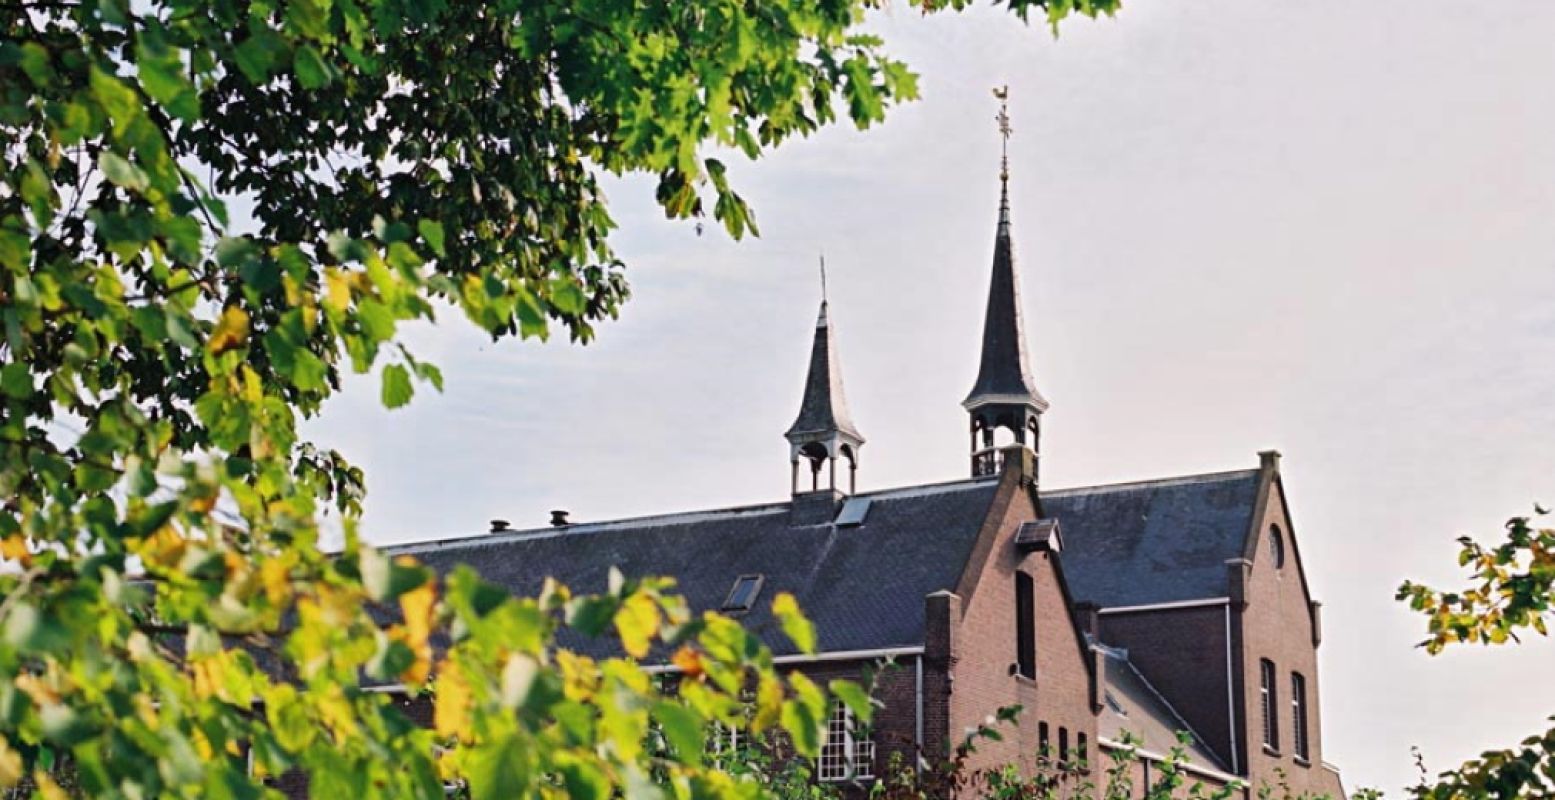 Overnacht in bijzonder B&B's. Bijvoorbeeld in een echt klooster, een oase van rust in hartje Breda. Foto: Het Klooster Breda.